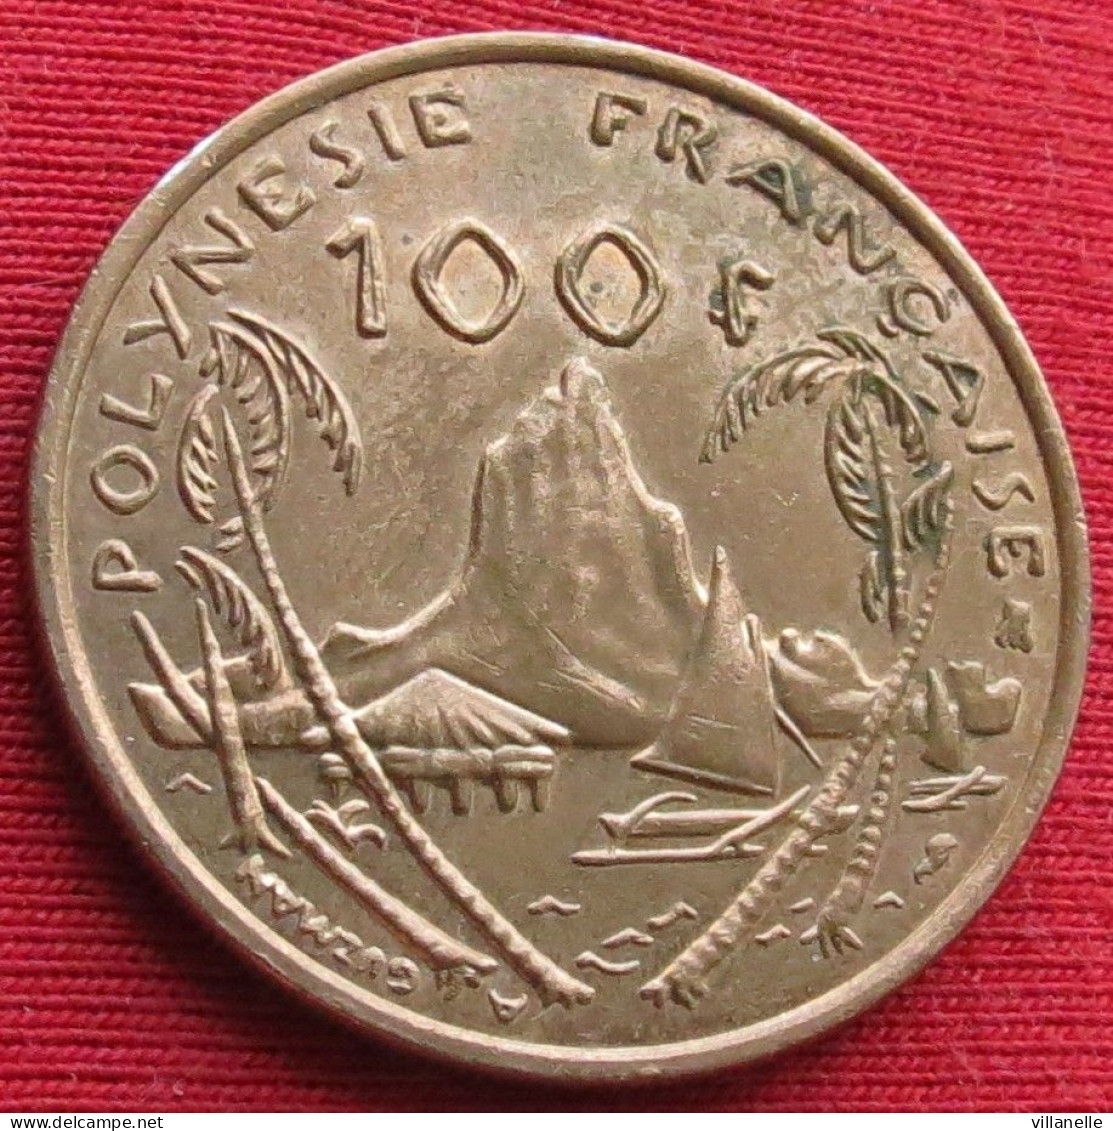 French Polynesia 100 Francs 1995 KM# 14 Lt 1567 *V1T Polynesie Polinesia - Polinesia Francesa